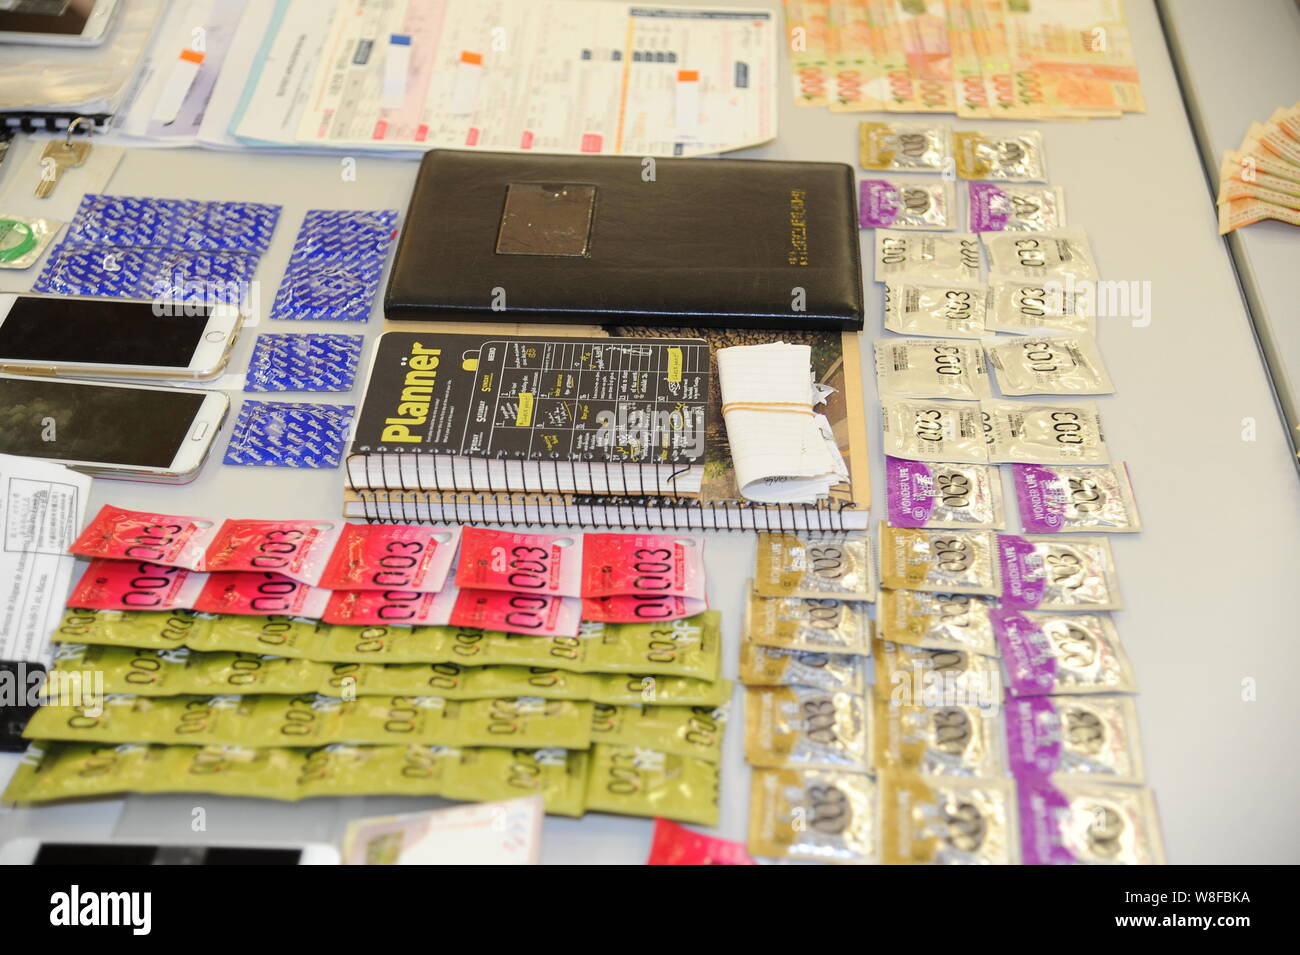 Kondome, Smartphones und beschlagnahmten Notebooks sind angezeigt, nach dem Mitglieder einer Bande sind wegen des Verdachts der Verwaltung einer Prostitution Ring während einer Pr verhaftet Stockfoto